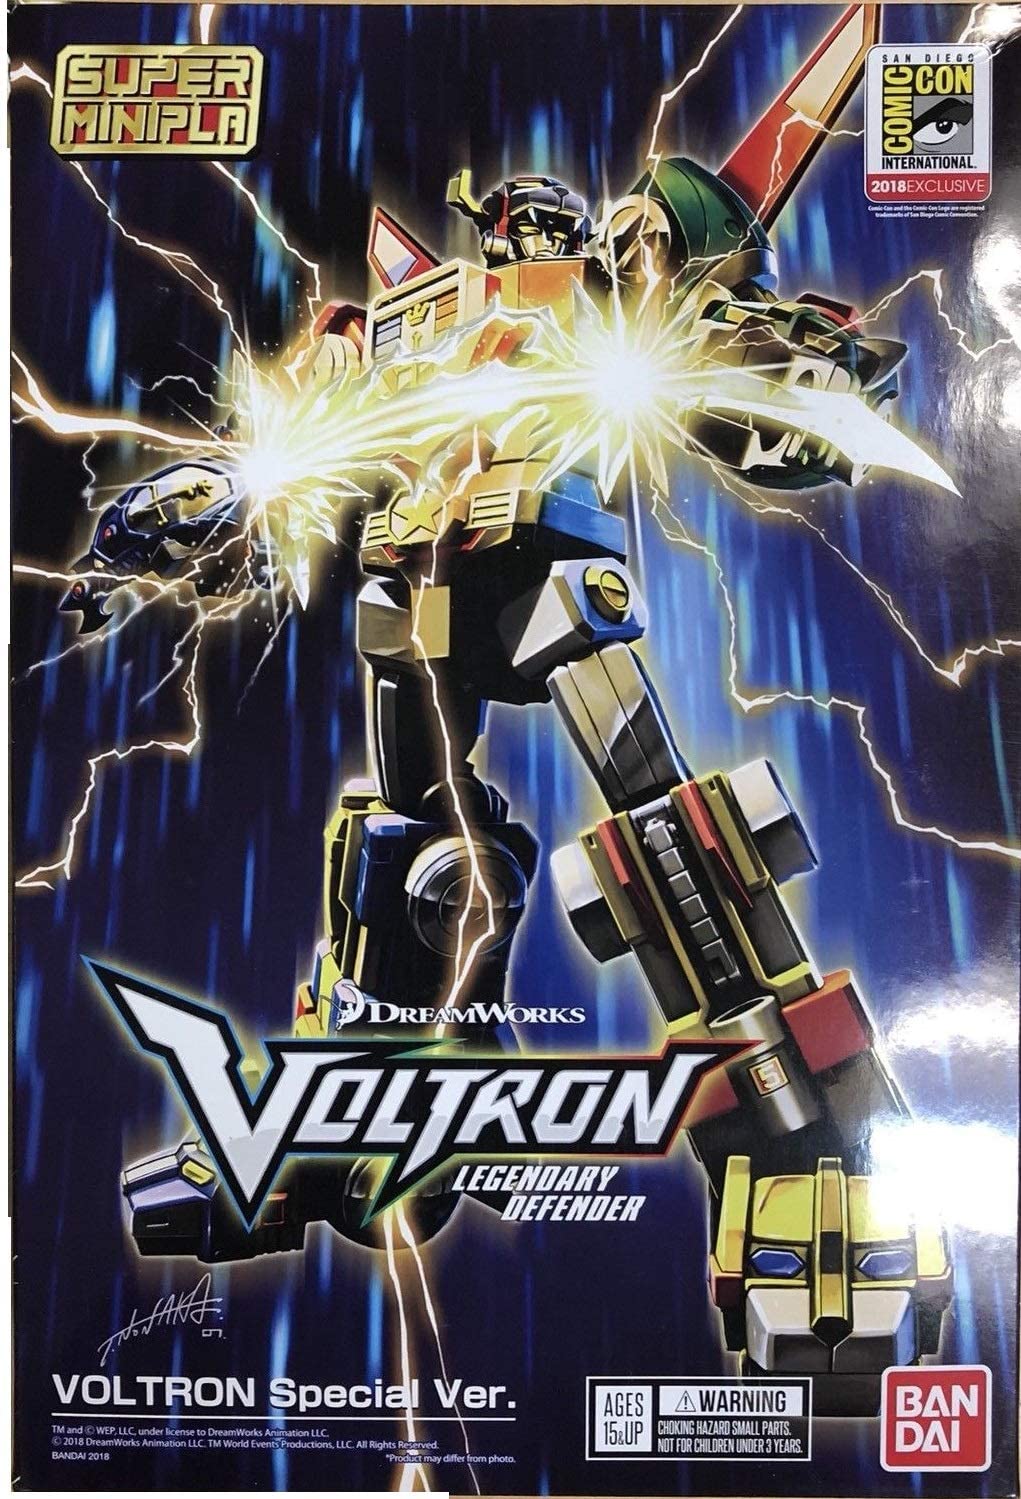 Bandai Voltron: Legendary Defender Voltron Special Ver. Super Minipla Model